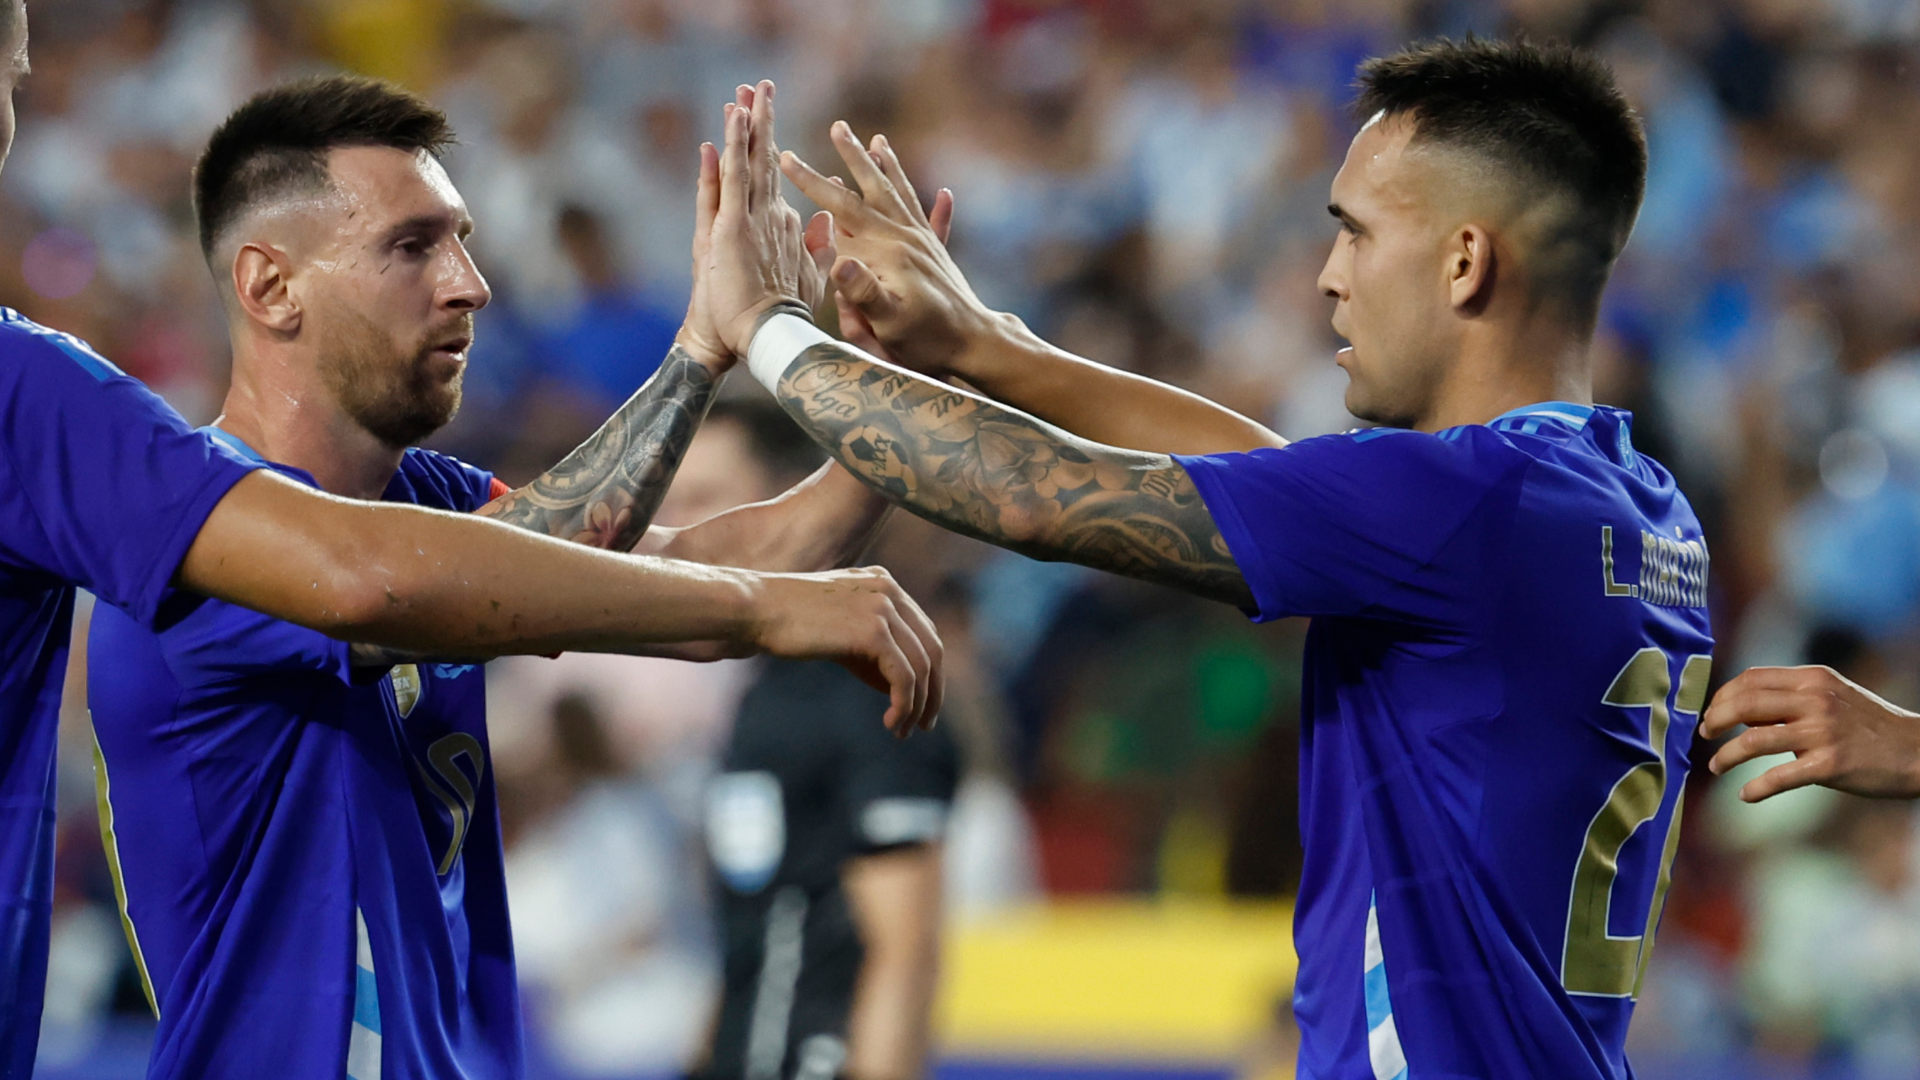 Calificaciones de jugadores de Argentina vs Guatemala: Lionel Messi es mágico y Lautaro Martínez encuentra su ritmo en la victoria en el partido de preparación de la Copa América